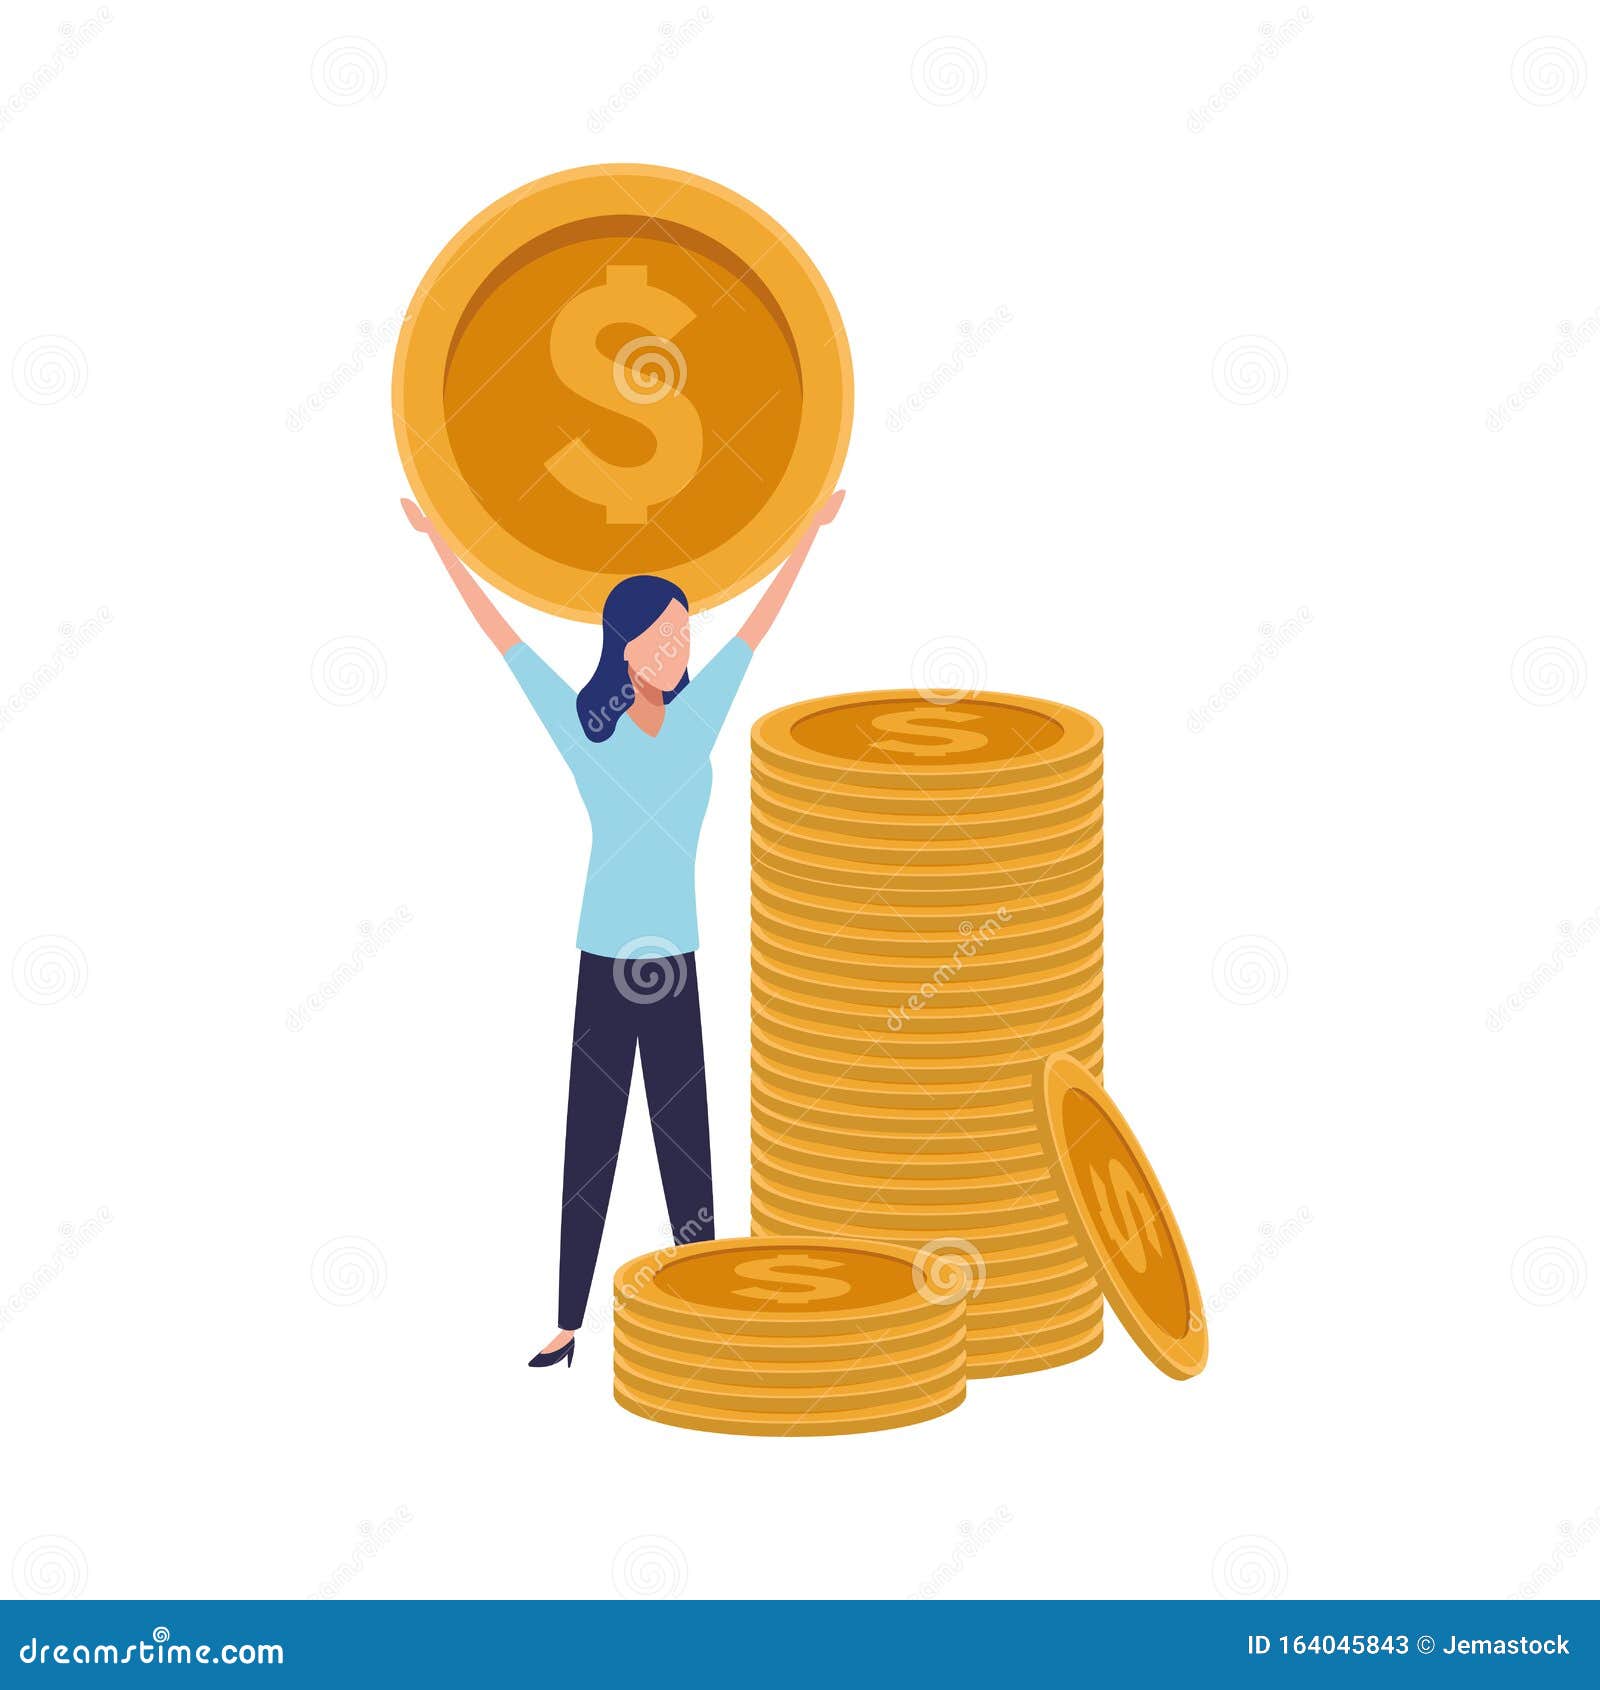 Person Icon Vector With Money Bag Dollar Female Avatar Symbol In Glyph  Pictogram Hình minh họa Sẵn có  Tải xuống Hình ảnh Ngay bây giờ  iStock